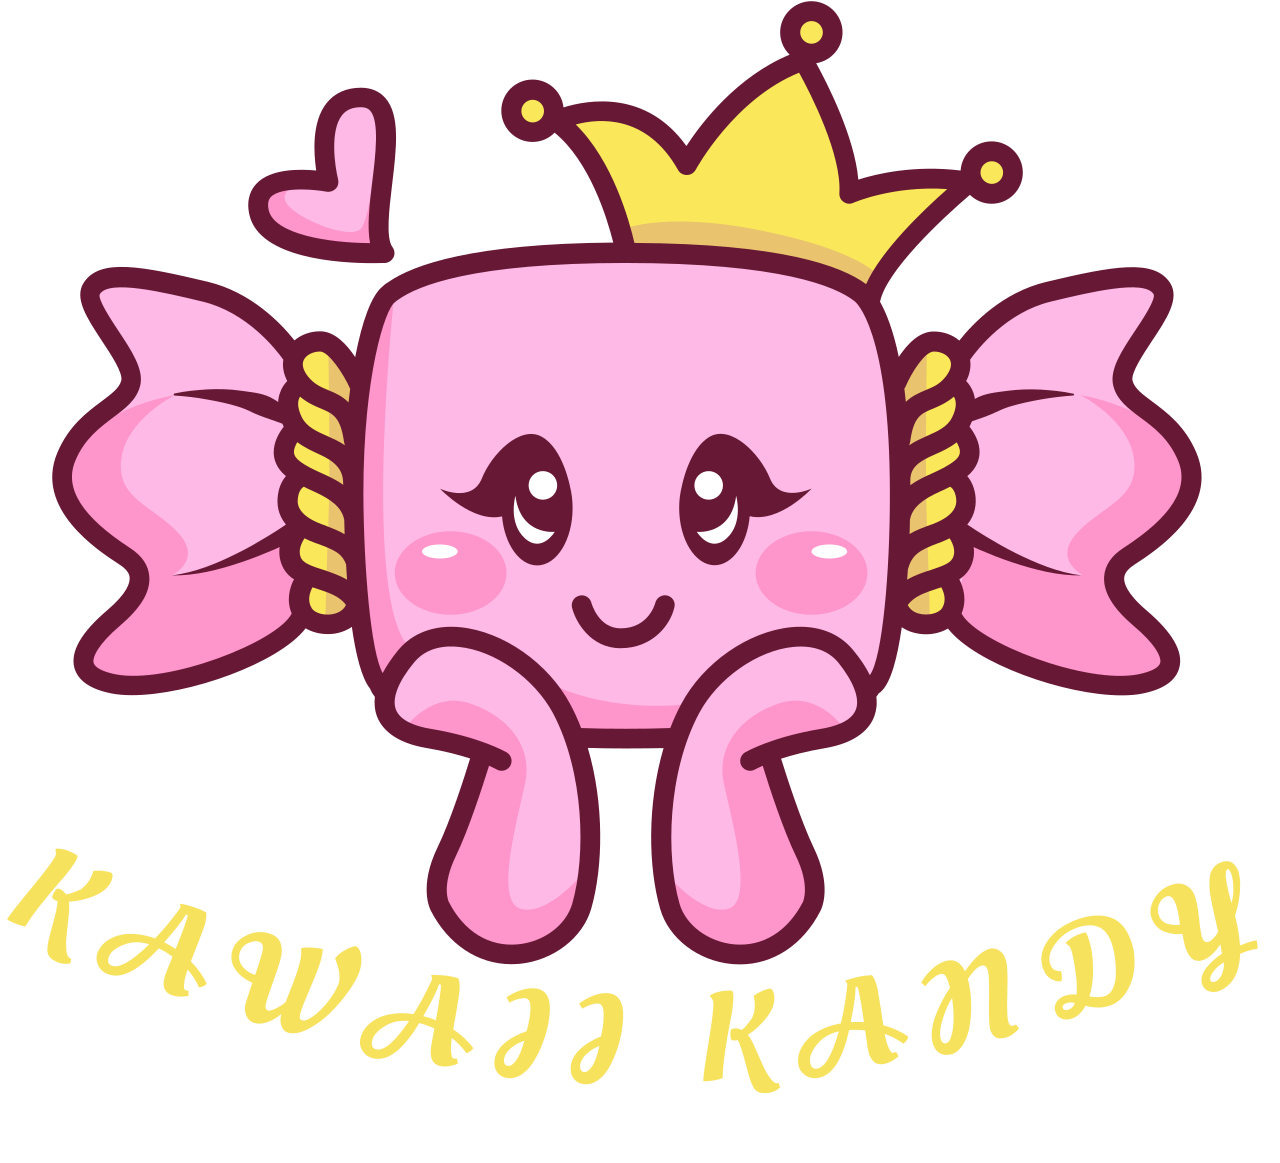 KAWAII KANDY 's logo